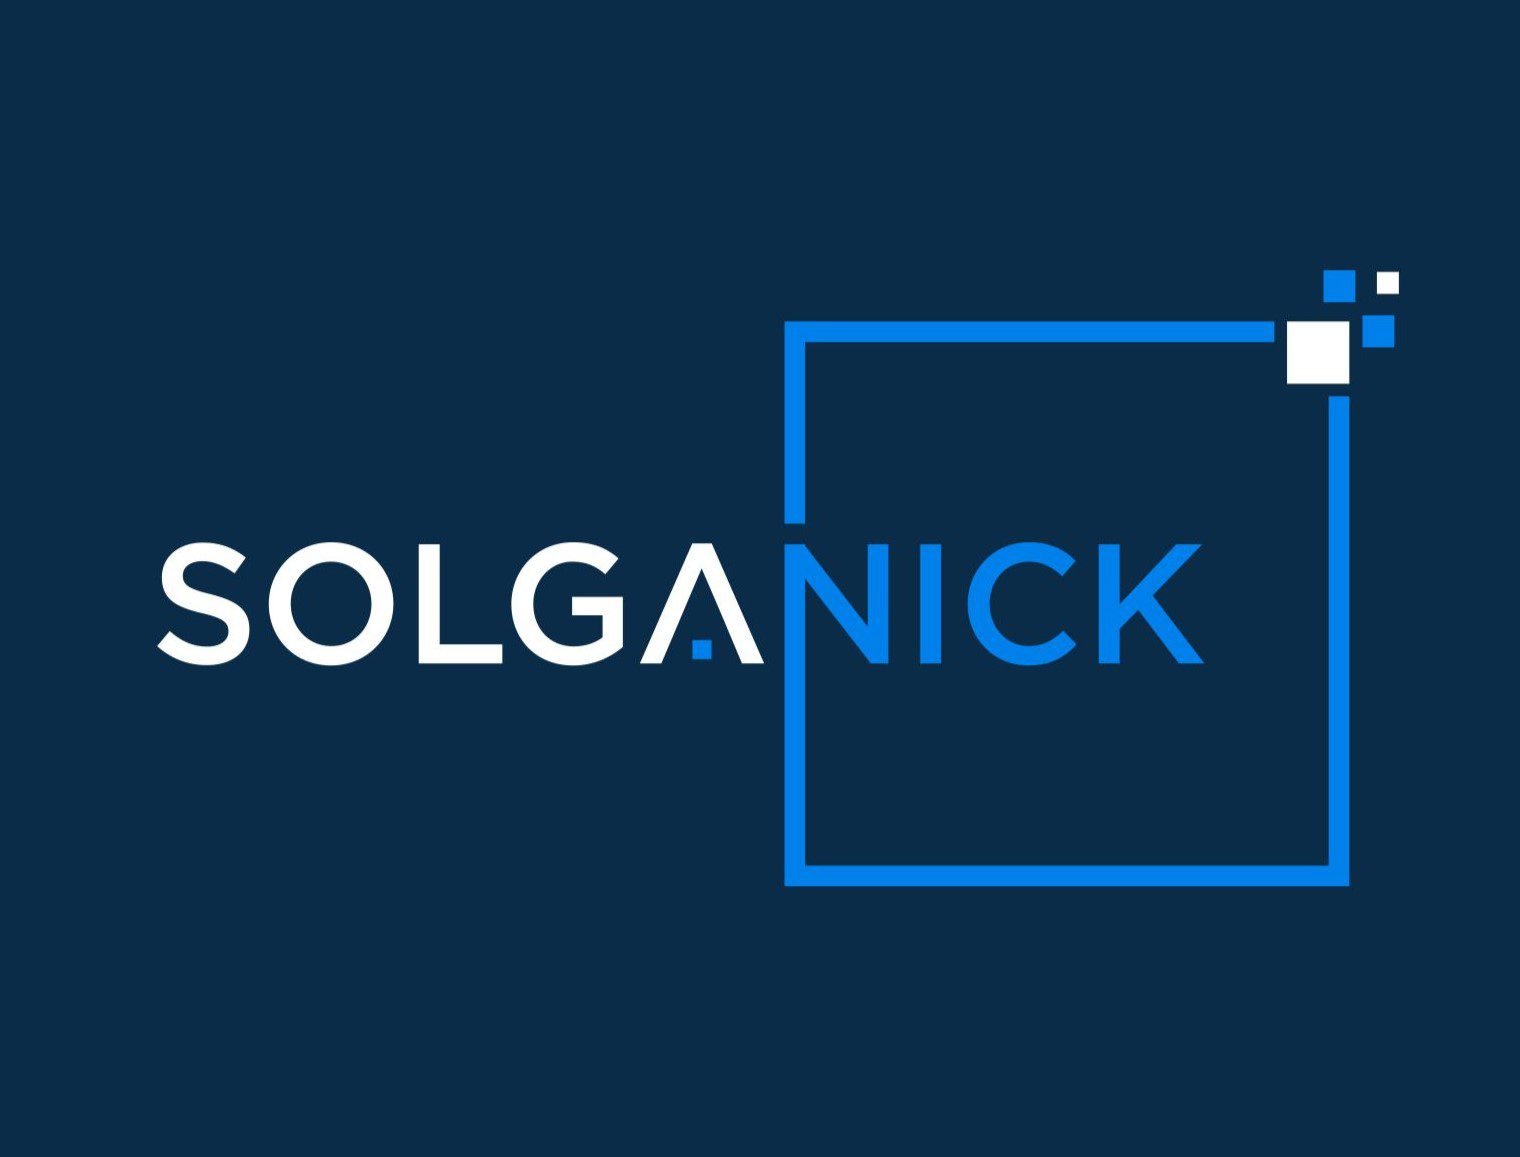 Solganick & Co